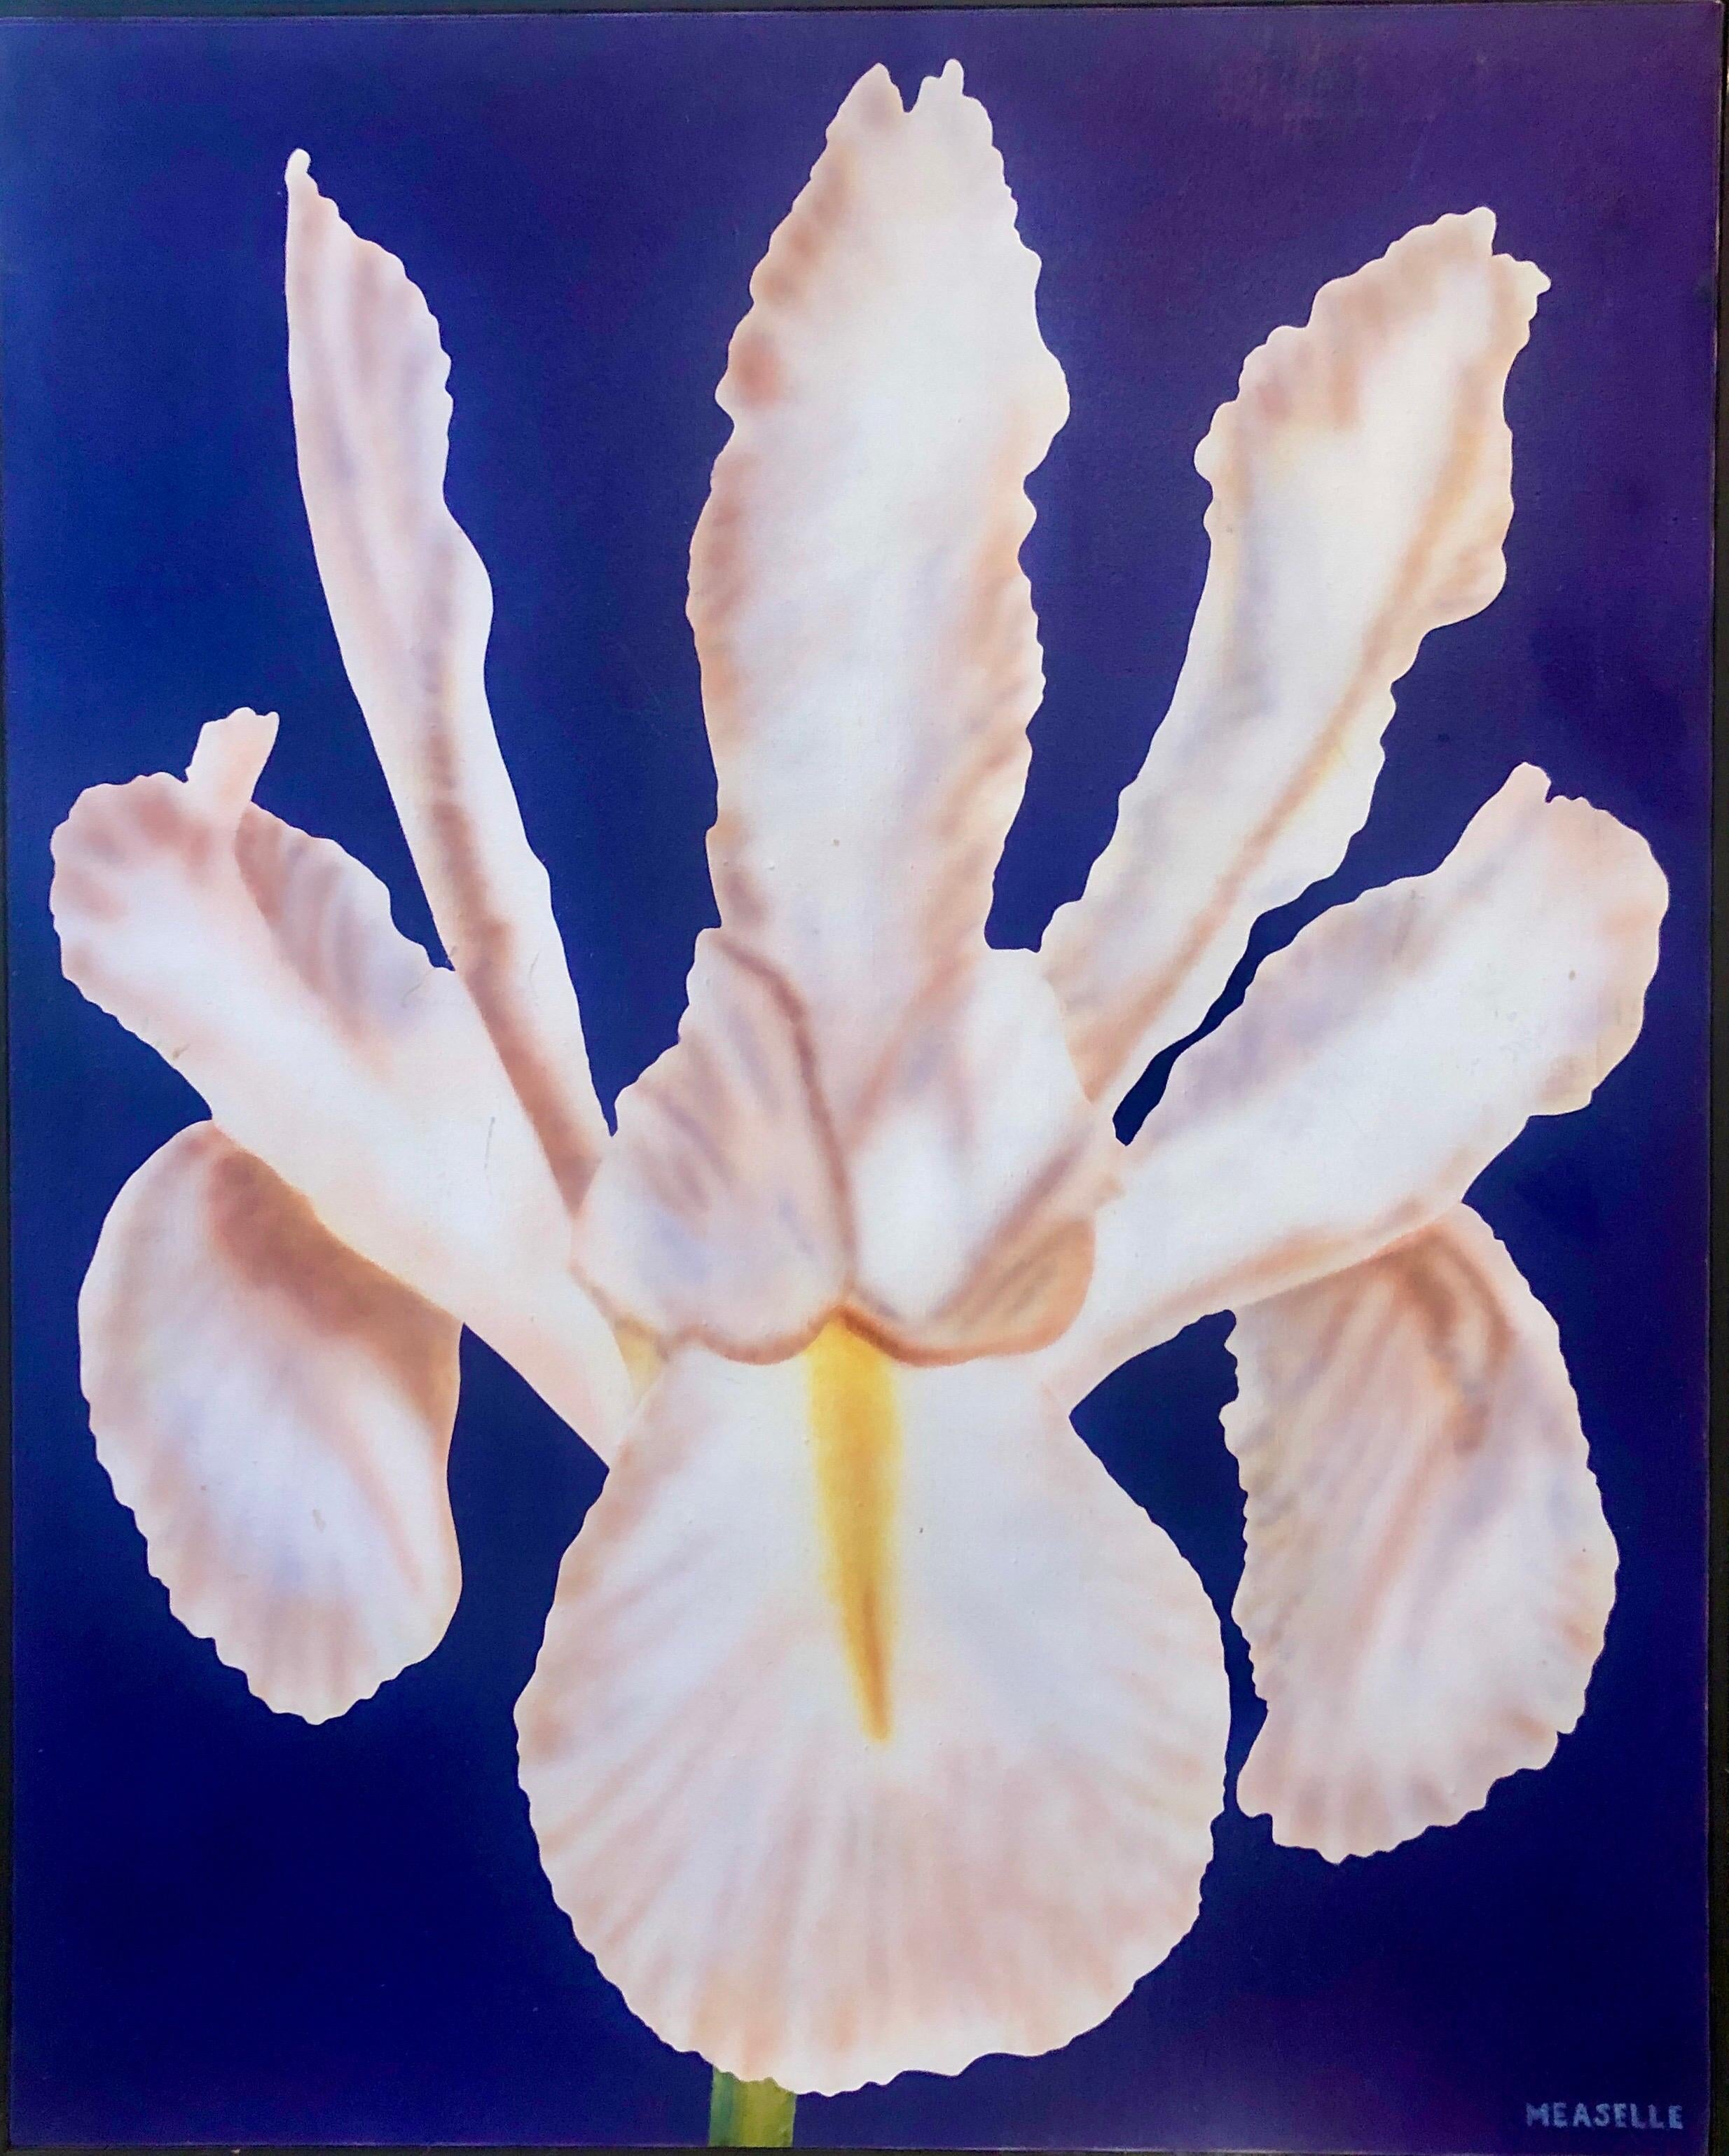 Figurative Painting Clarence Measelle - Photoréalisme - Nature morte - Peinture acrylique - Fleur - Photoréaliste - Orchidée, bleu vif